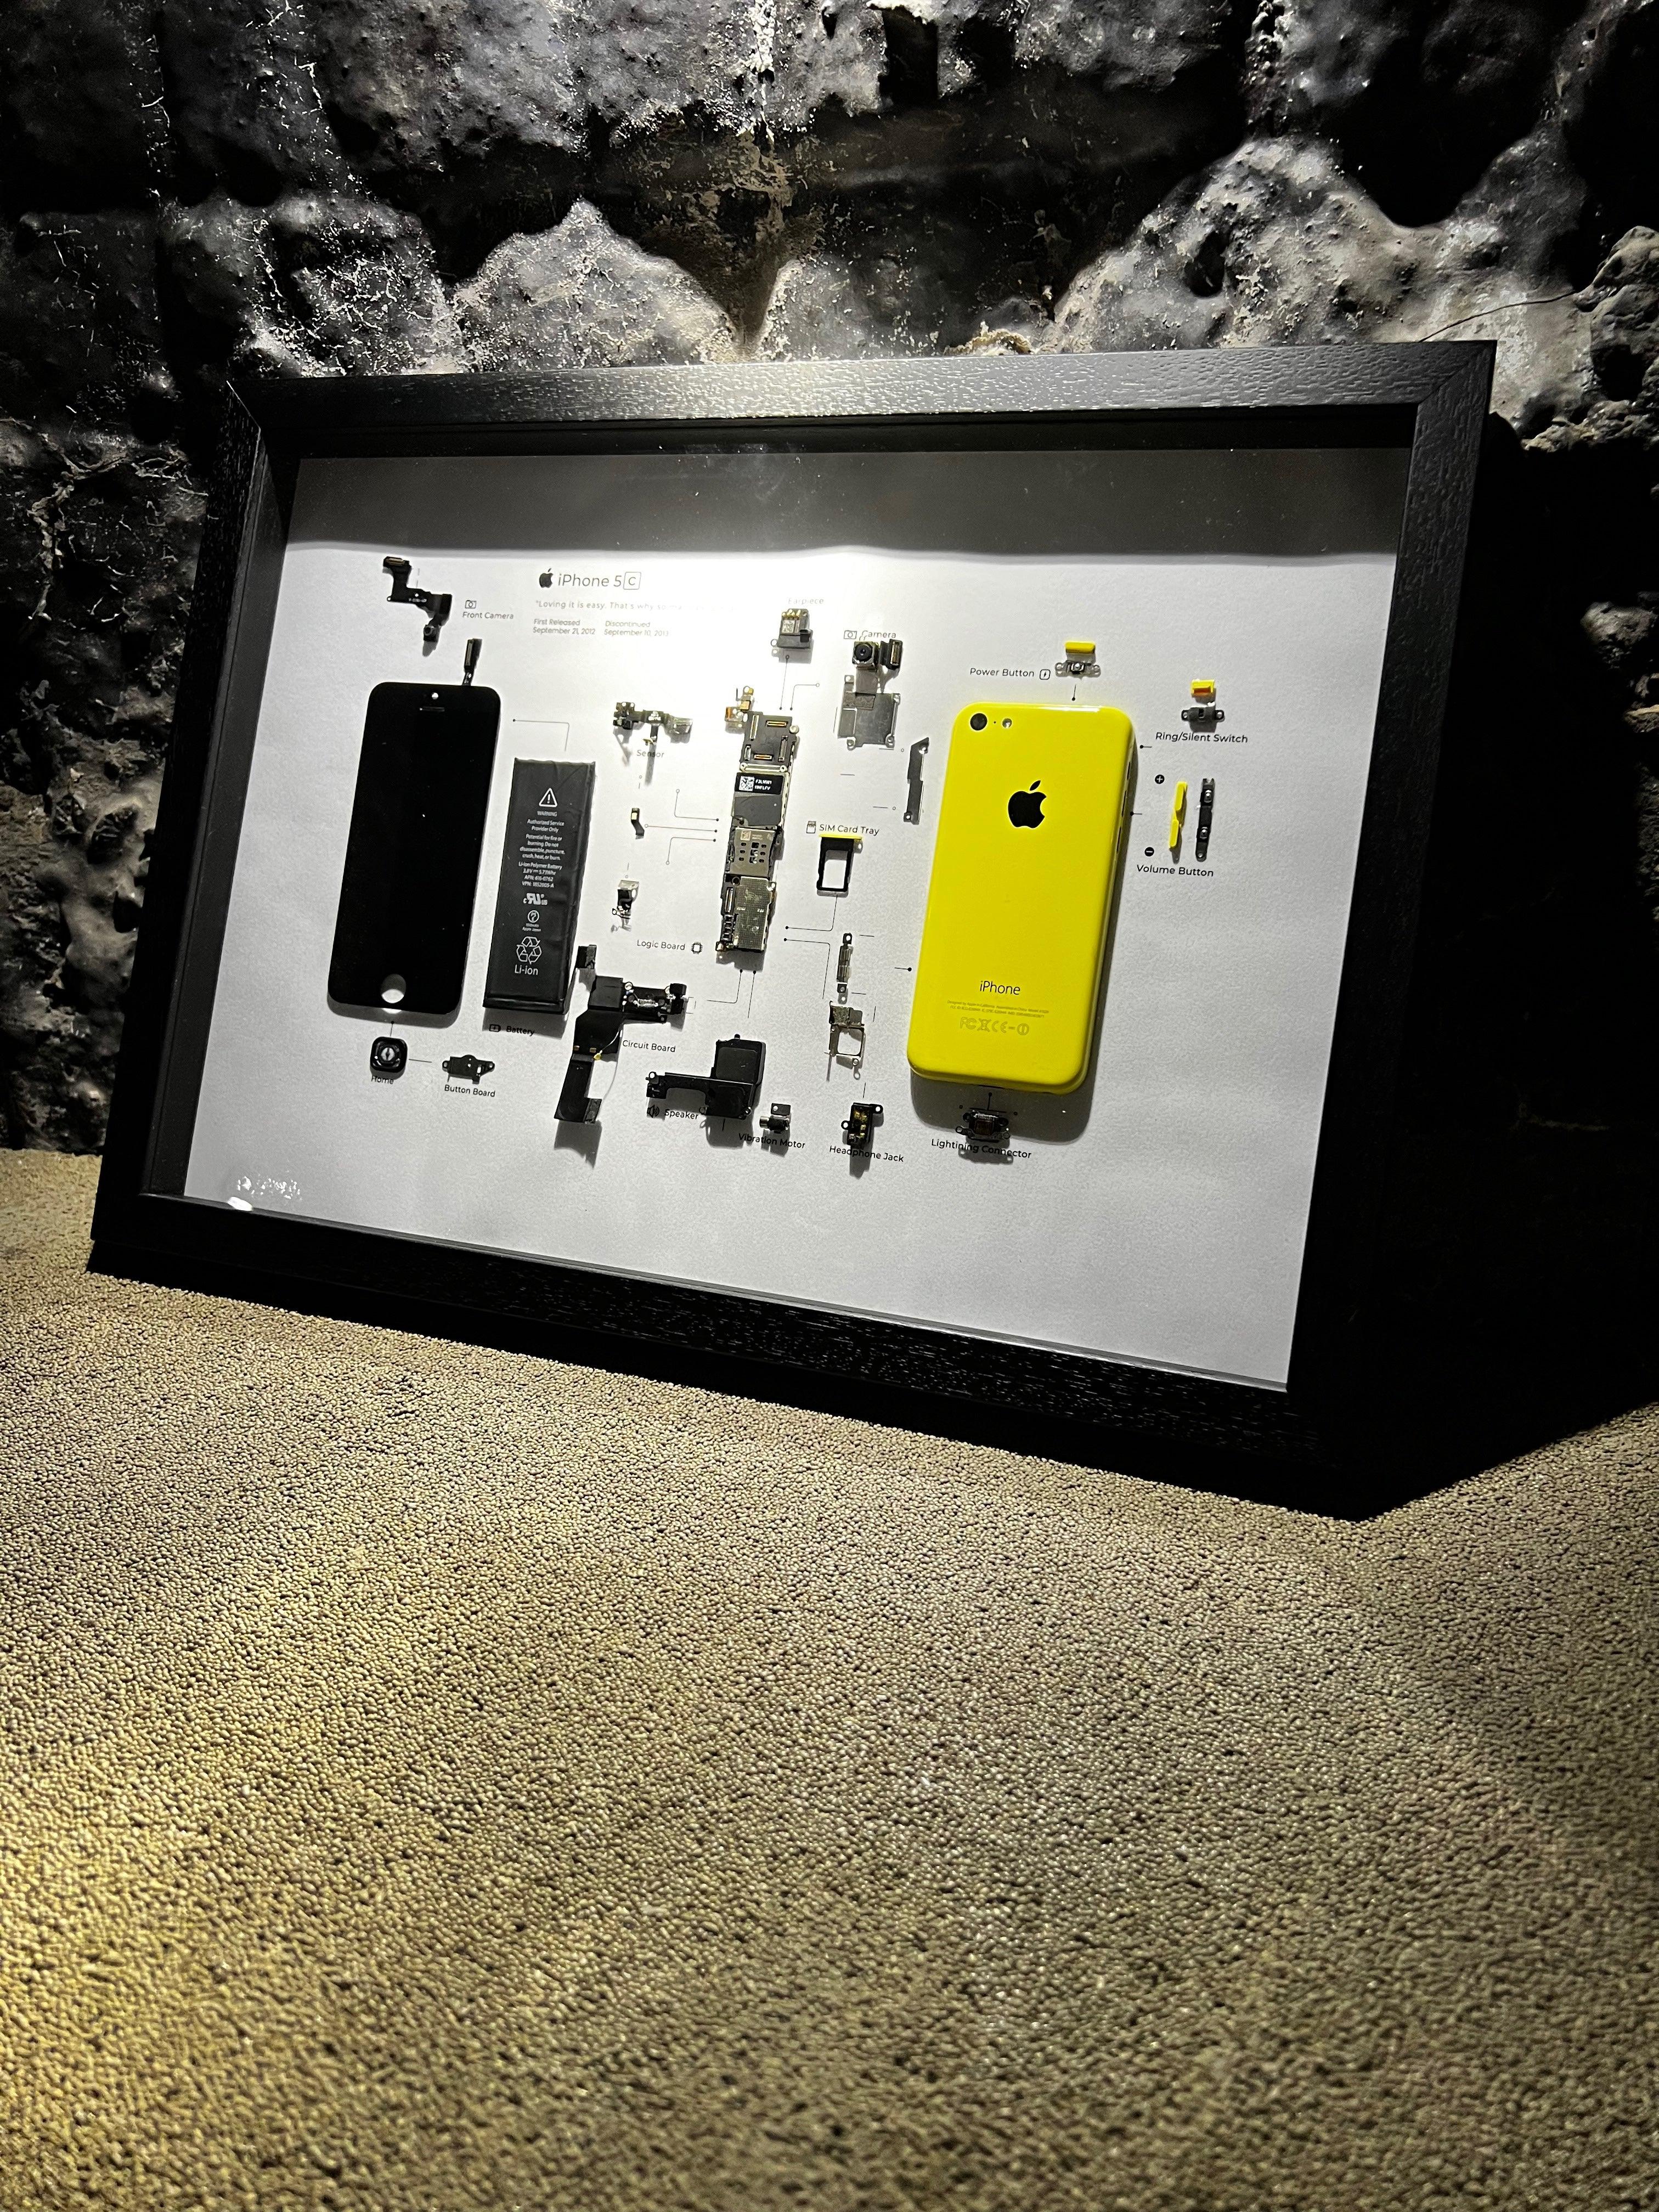 iPhone 5C Tech Art - Want a New Gadget